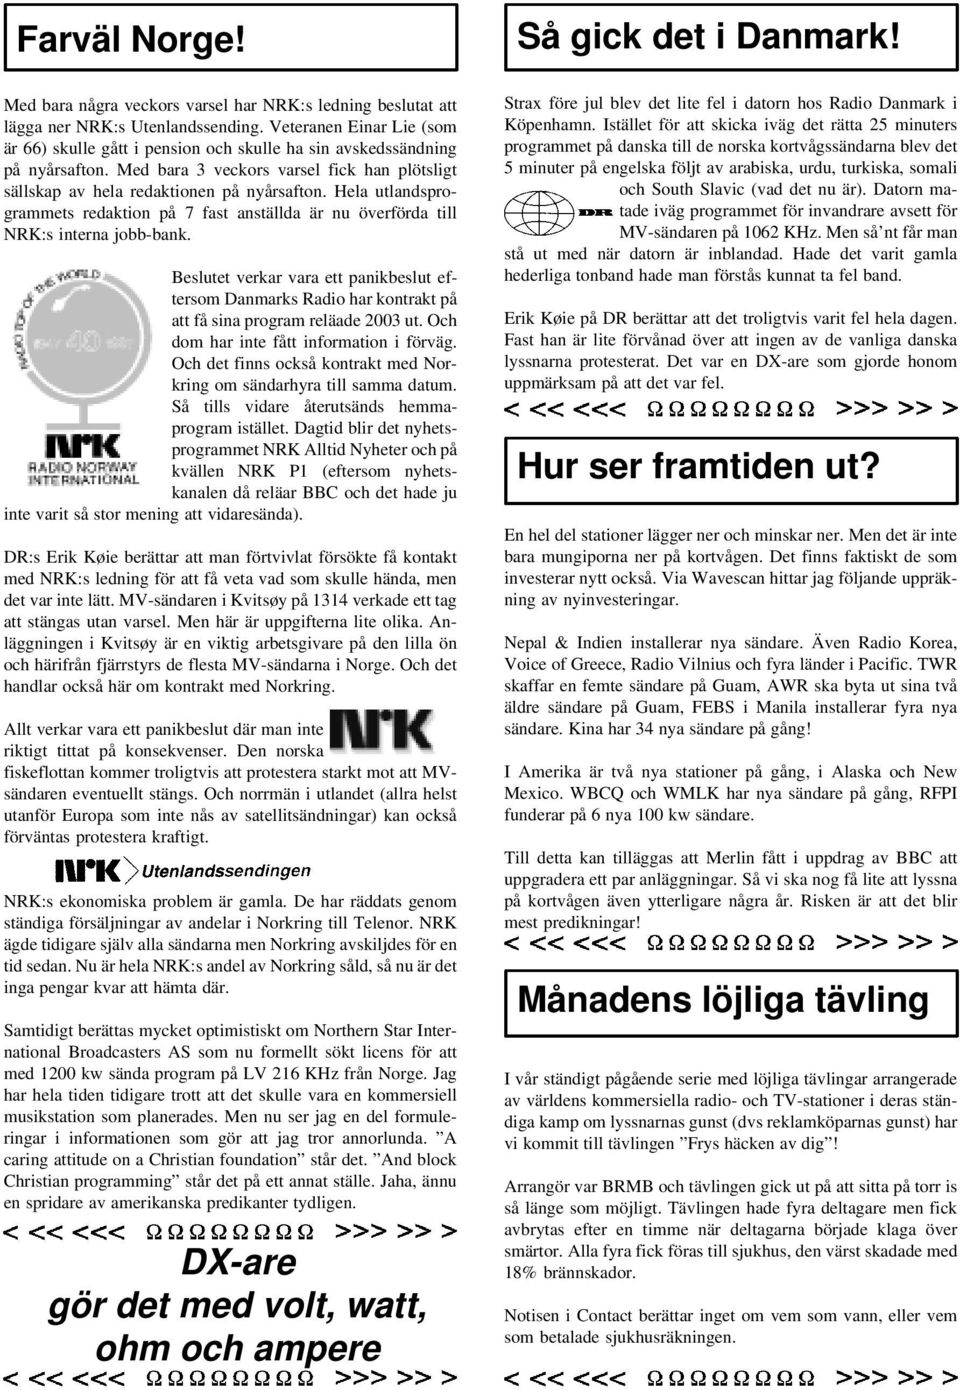 Hela utlandsprogrammets redaktion på 7 fast anställda är nu överförda till NRK:s interna jobb-bank.